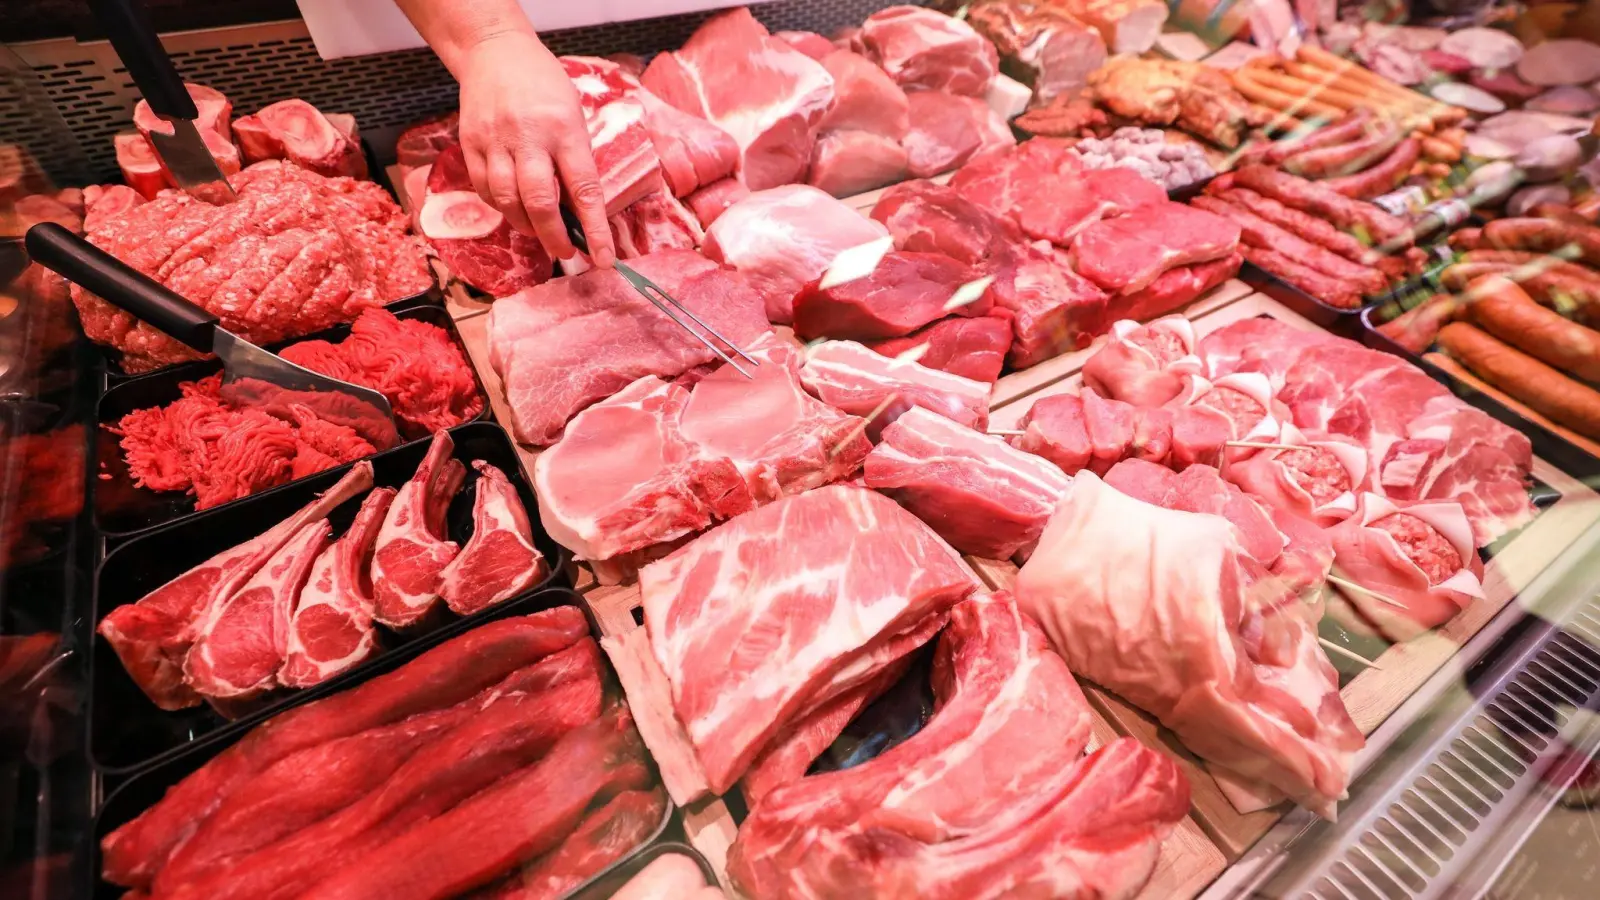 Supermarktkunden sollen bei mehr Fleischwaren Klarheit über das Herkunftsland der Tiere bekommen. Darauf zielt eine Verordnung von Ernährungsminister Özdemir ab. (Foto: Jan Woitas/dpa-Zentralbild/dpa)